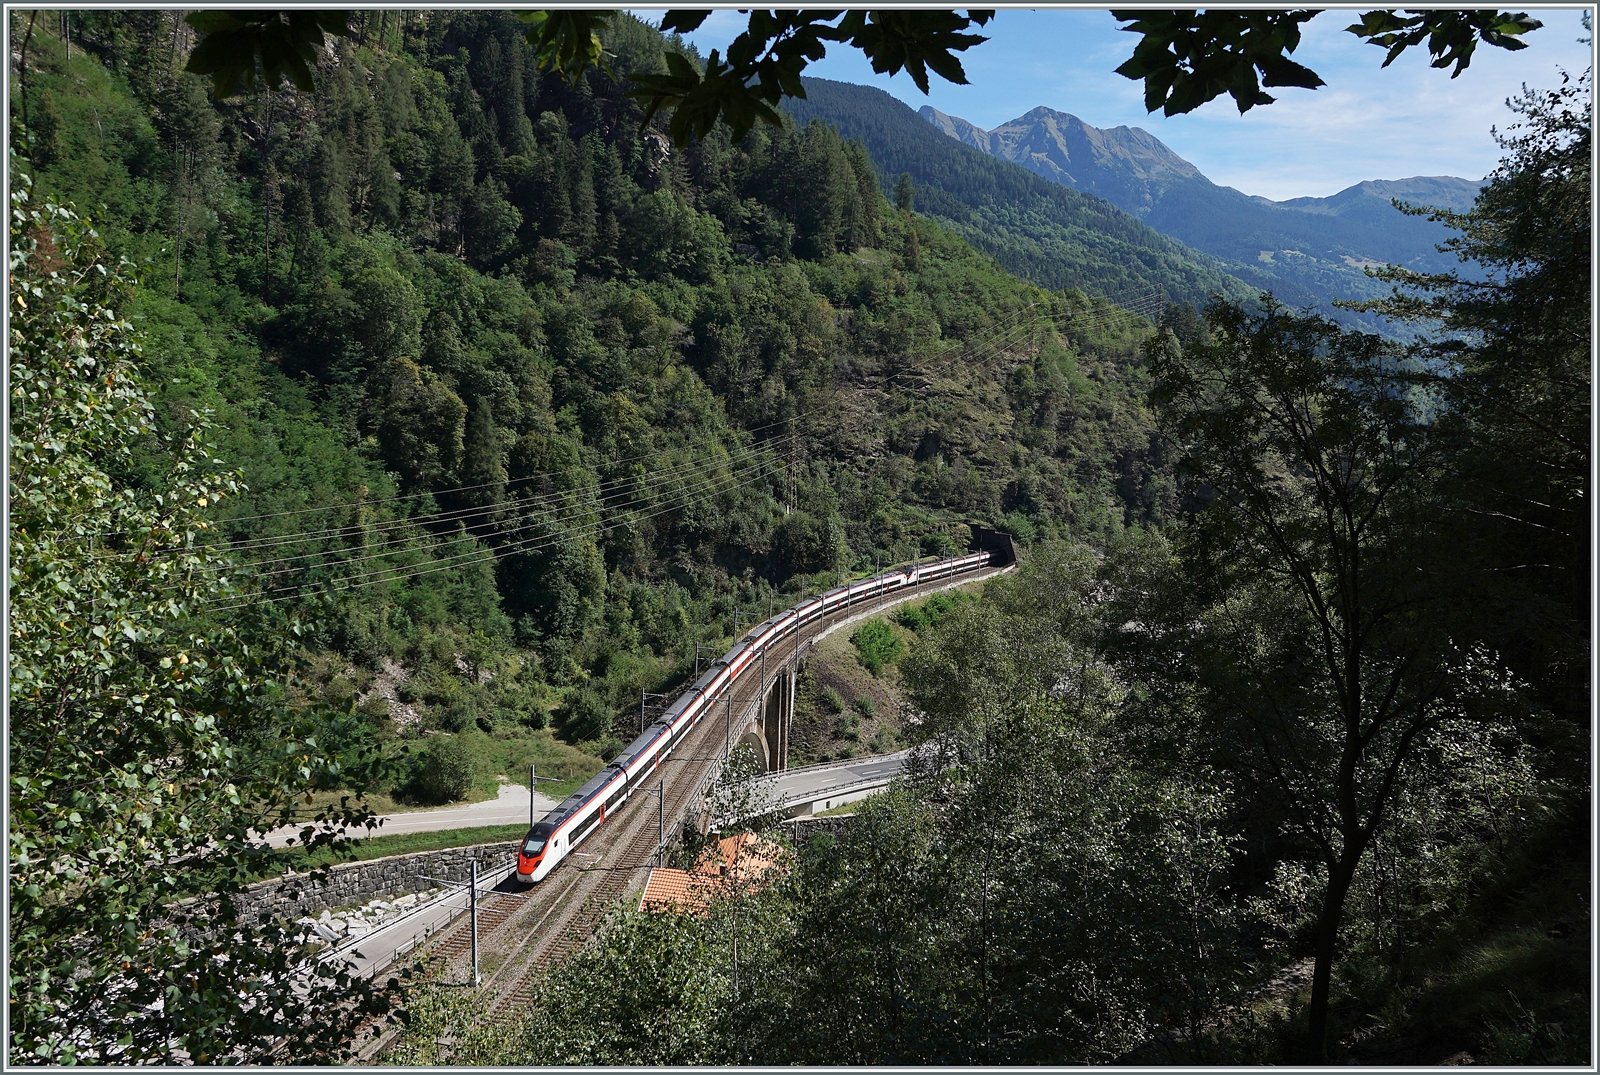 Als ich im 6. September 2016 ein weiteres mal diese Fotostelle aufsuchte, schrieb ich: Langsam aber sicher geht am Gotthard das Licht aus. (Bild ID 972619) 
Heute, ziemlich genau sieben Jahre später herrscht hier wieder eitel Sonnenschein! 

Zwei SBB RABe 501  Giruno  sind als IC 10667 von Basel SBB nach Lugano unterwegs, während der führende Zug bereits in den 304 Meter langen Polmengotunnel fährt, ist der hintere noch auf der 103 Meter langen Polmengobrücke unterwegs.

4. September  2023 

